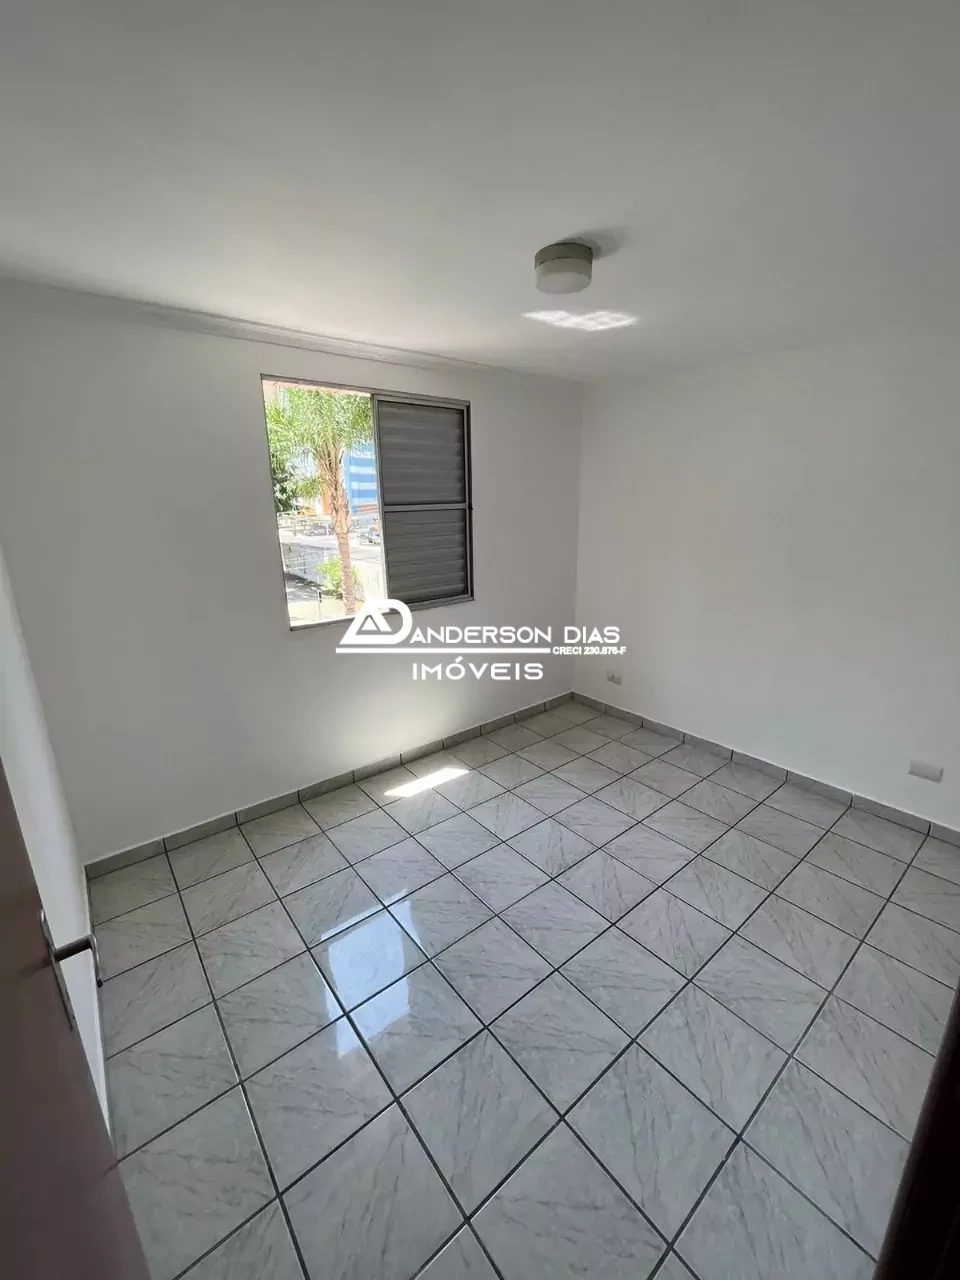 Apartamento com 3 dormitórios, 69,00m² por R$ 298.000,00 - Jardim Satélite - São José dos campos/SP